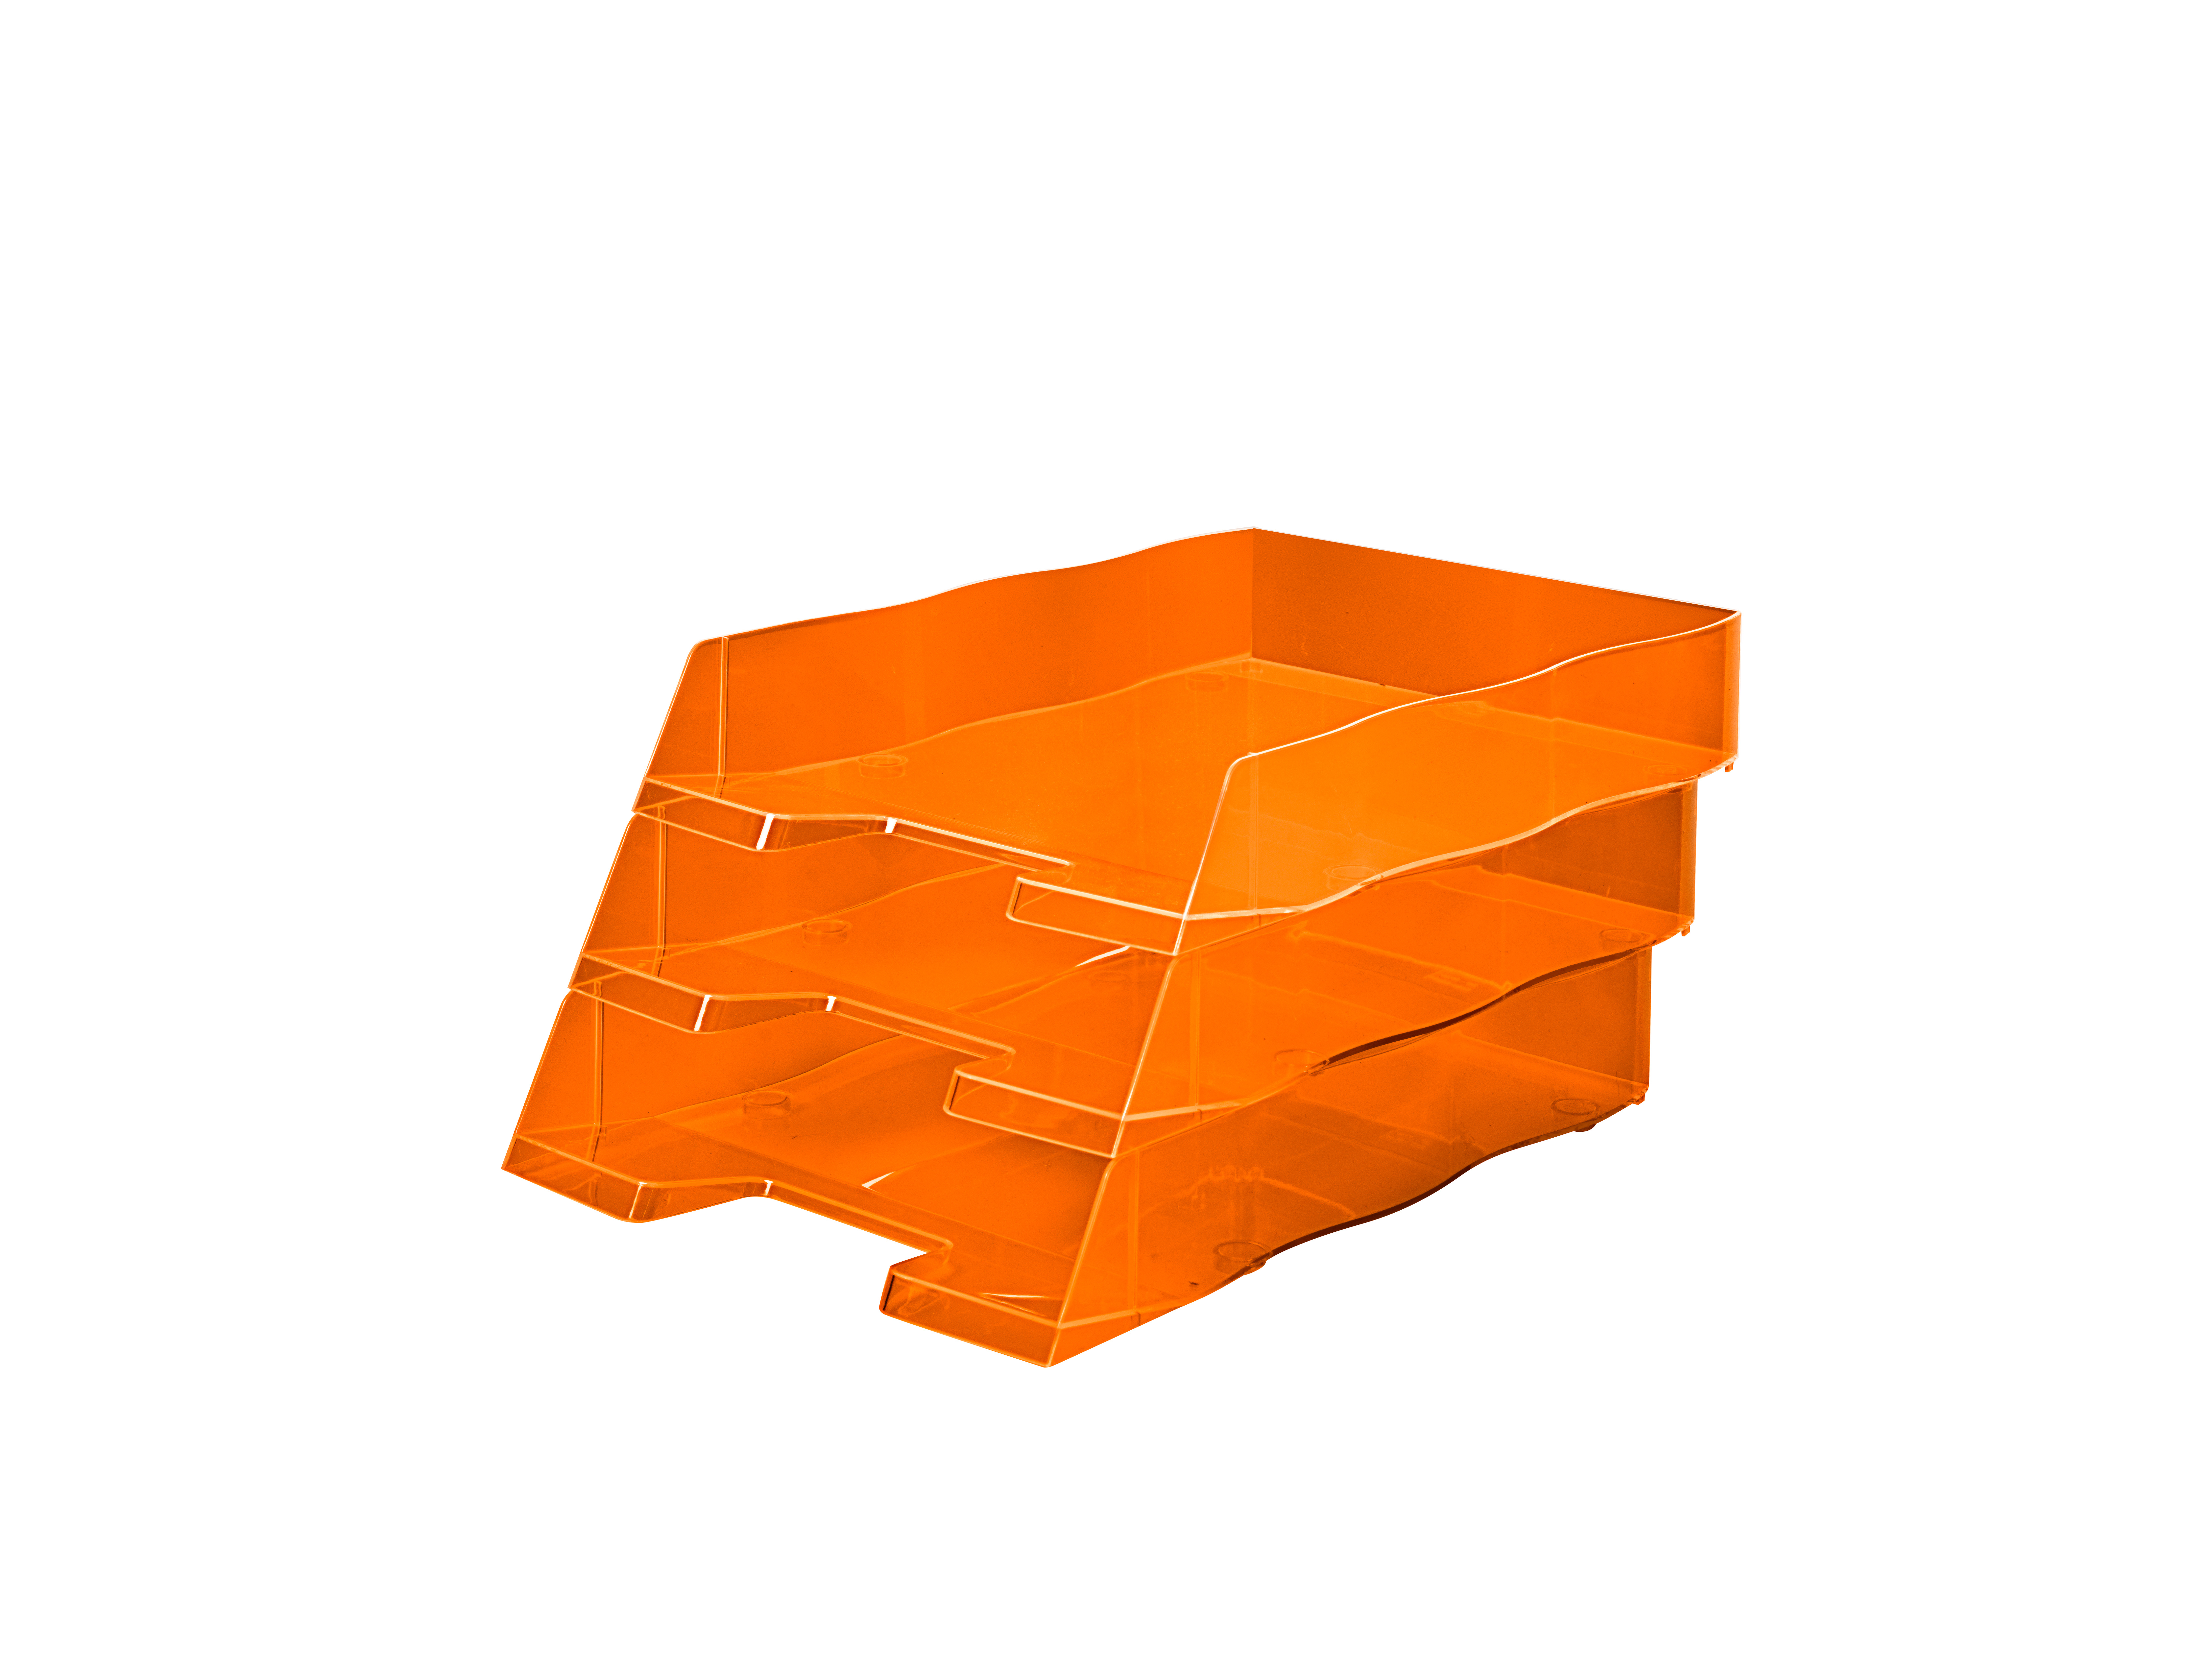 STYRO Corbeille à courrier NEONline 30-1030.46 neon orange